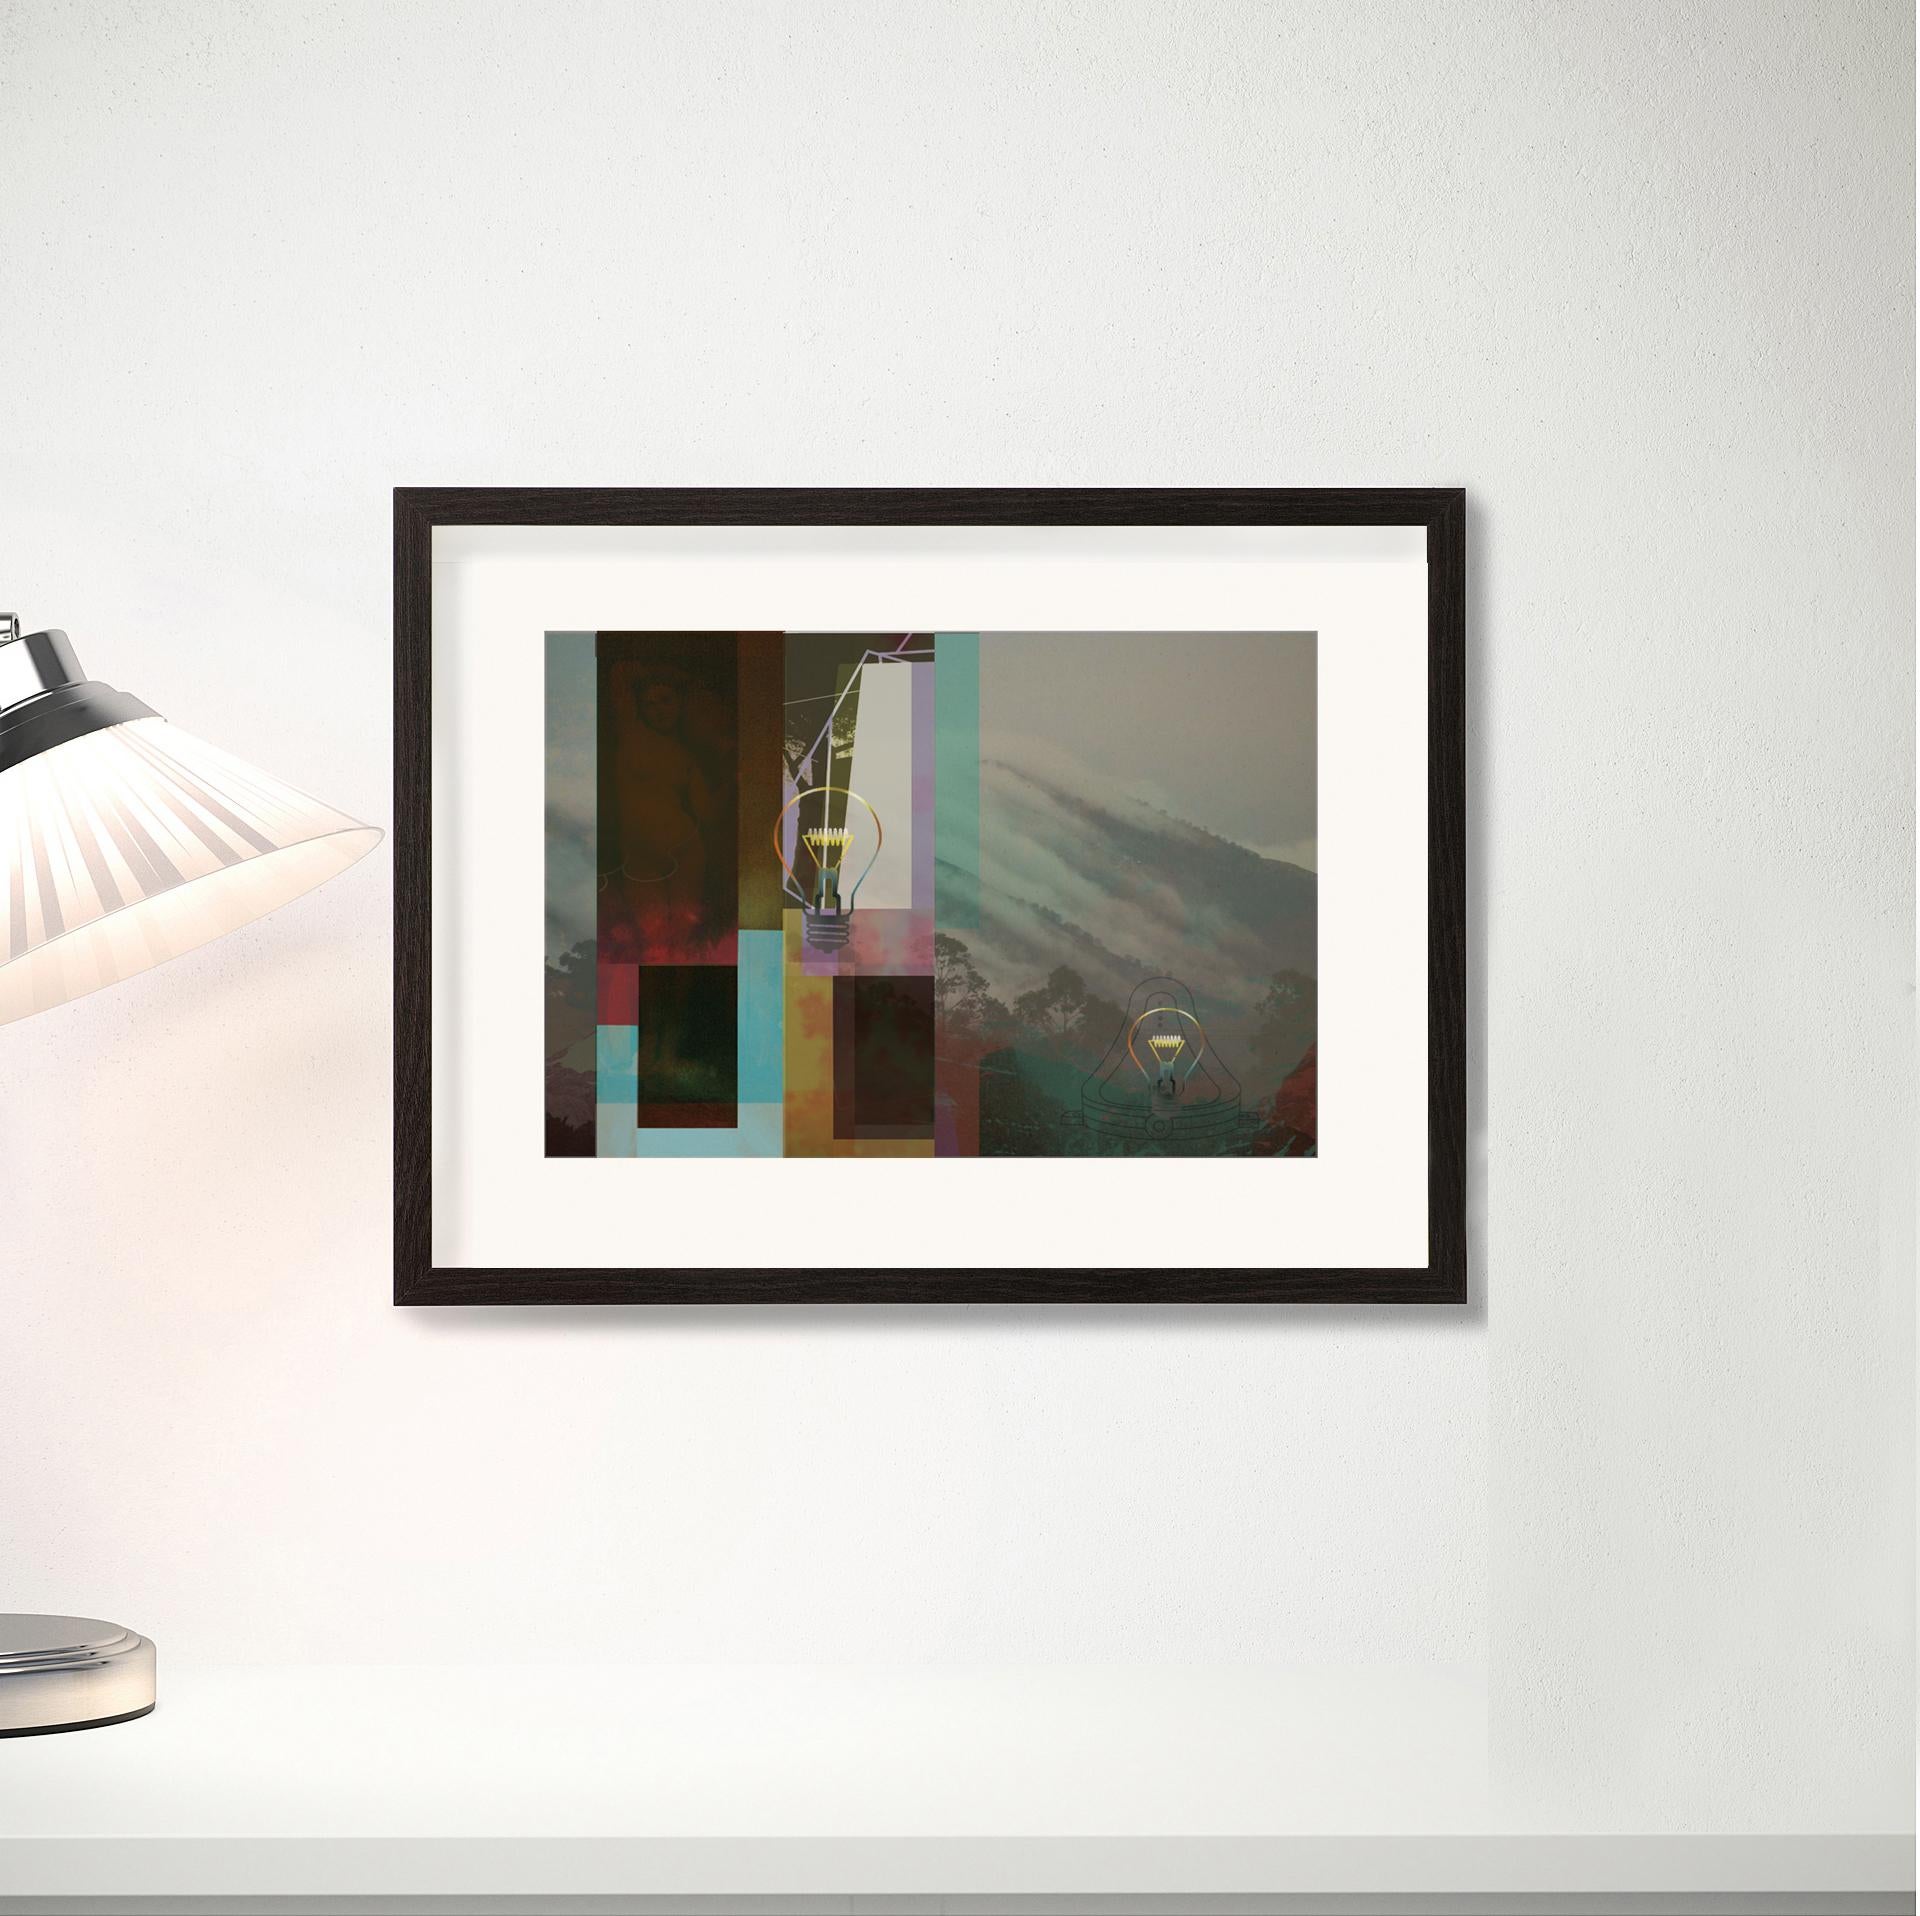 Zwei Lichter – Zeitgenössisch, abstrakt, minimalistisch, modern, surrealistisch, Landschaft (Abstrakt), Mixed Media Art, von Francisco Nicolás